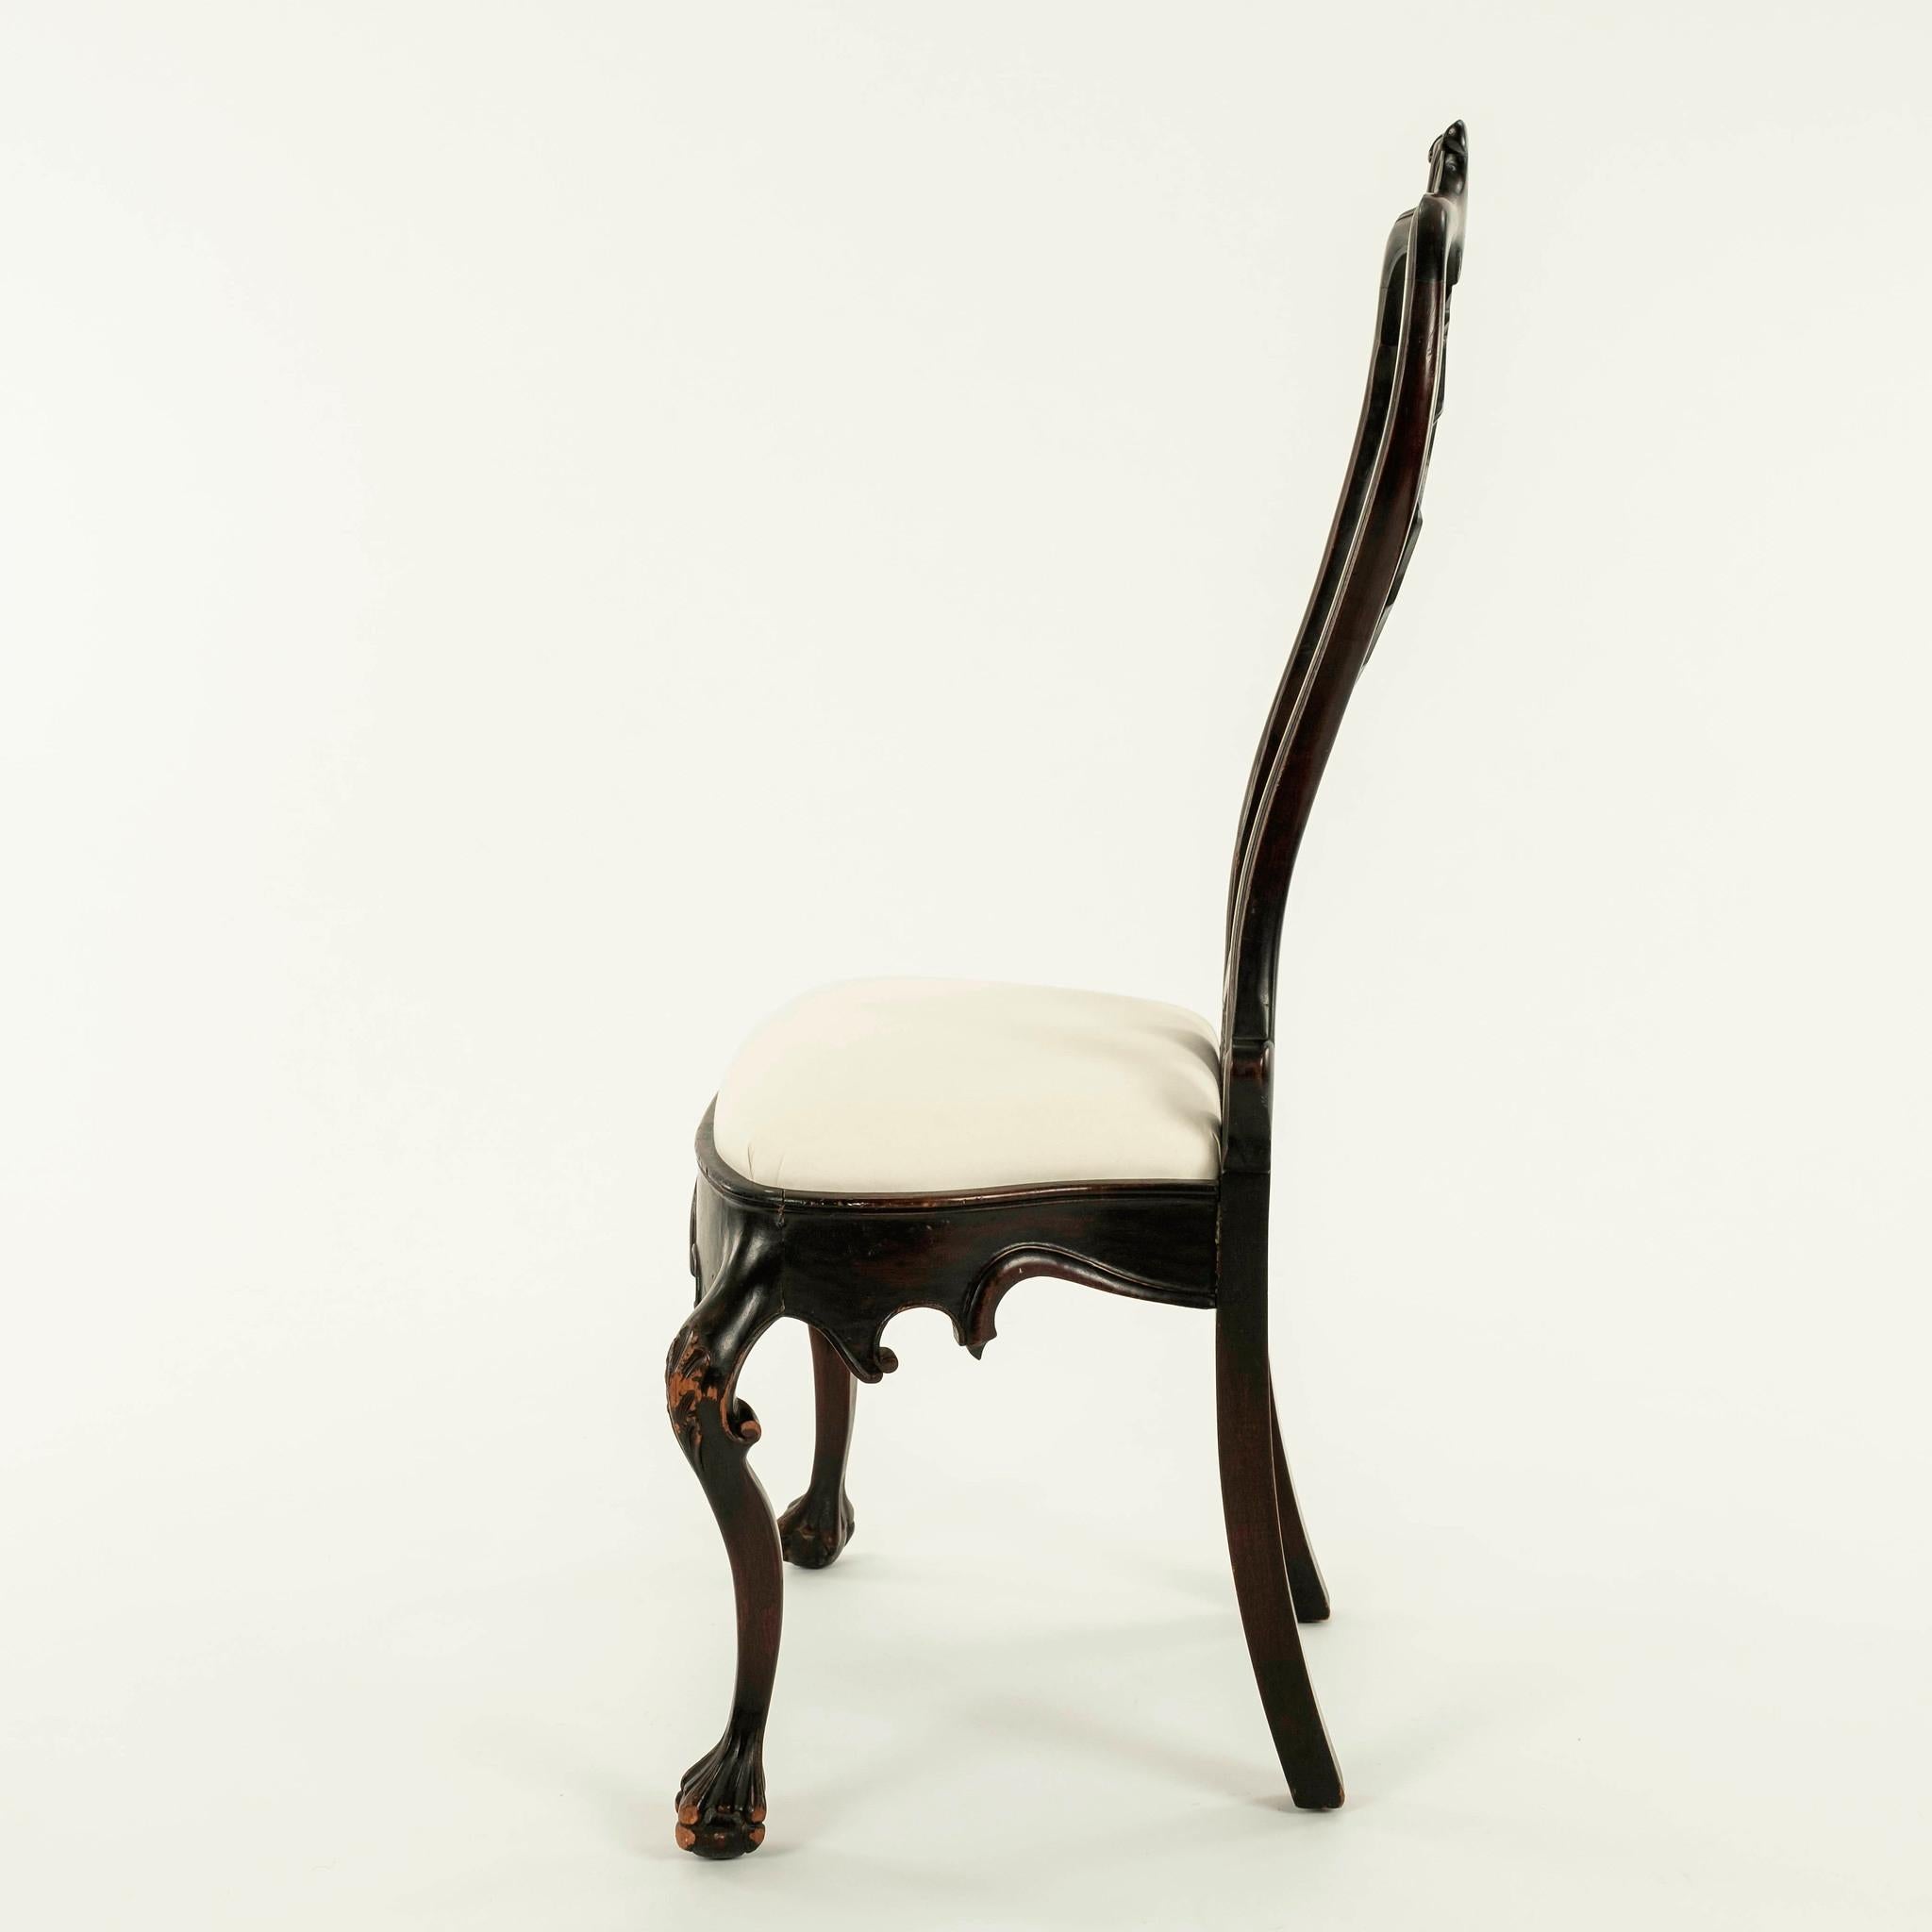 Mahagoni-Stuhl im portugiesischen Rokoko-Stil des 19. Jahrhunderts mit verschnörkeltem Kamm auf einer doppelten Dotterrückenlehne, in deren Mitte sich ein geformter flacher Splat befindet, und einer gewellten Sitzschiene, in deren Mitte sich ein